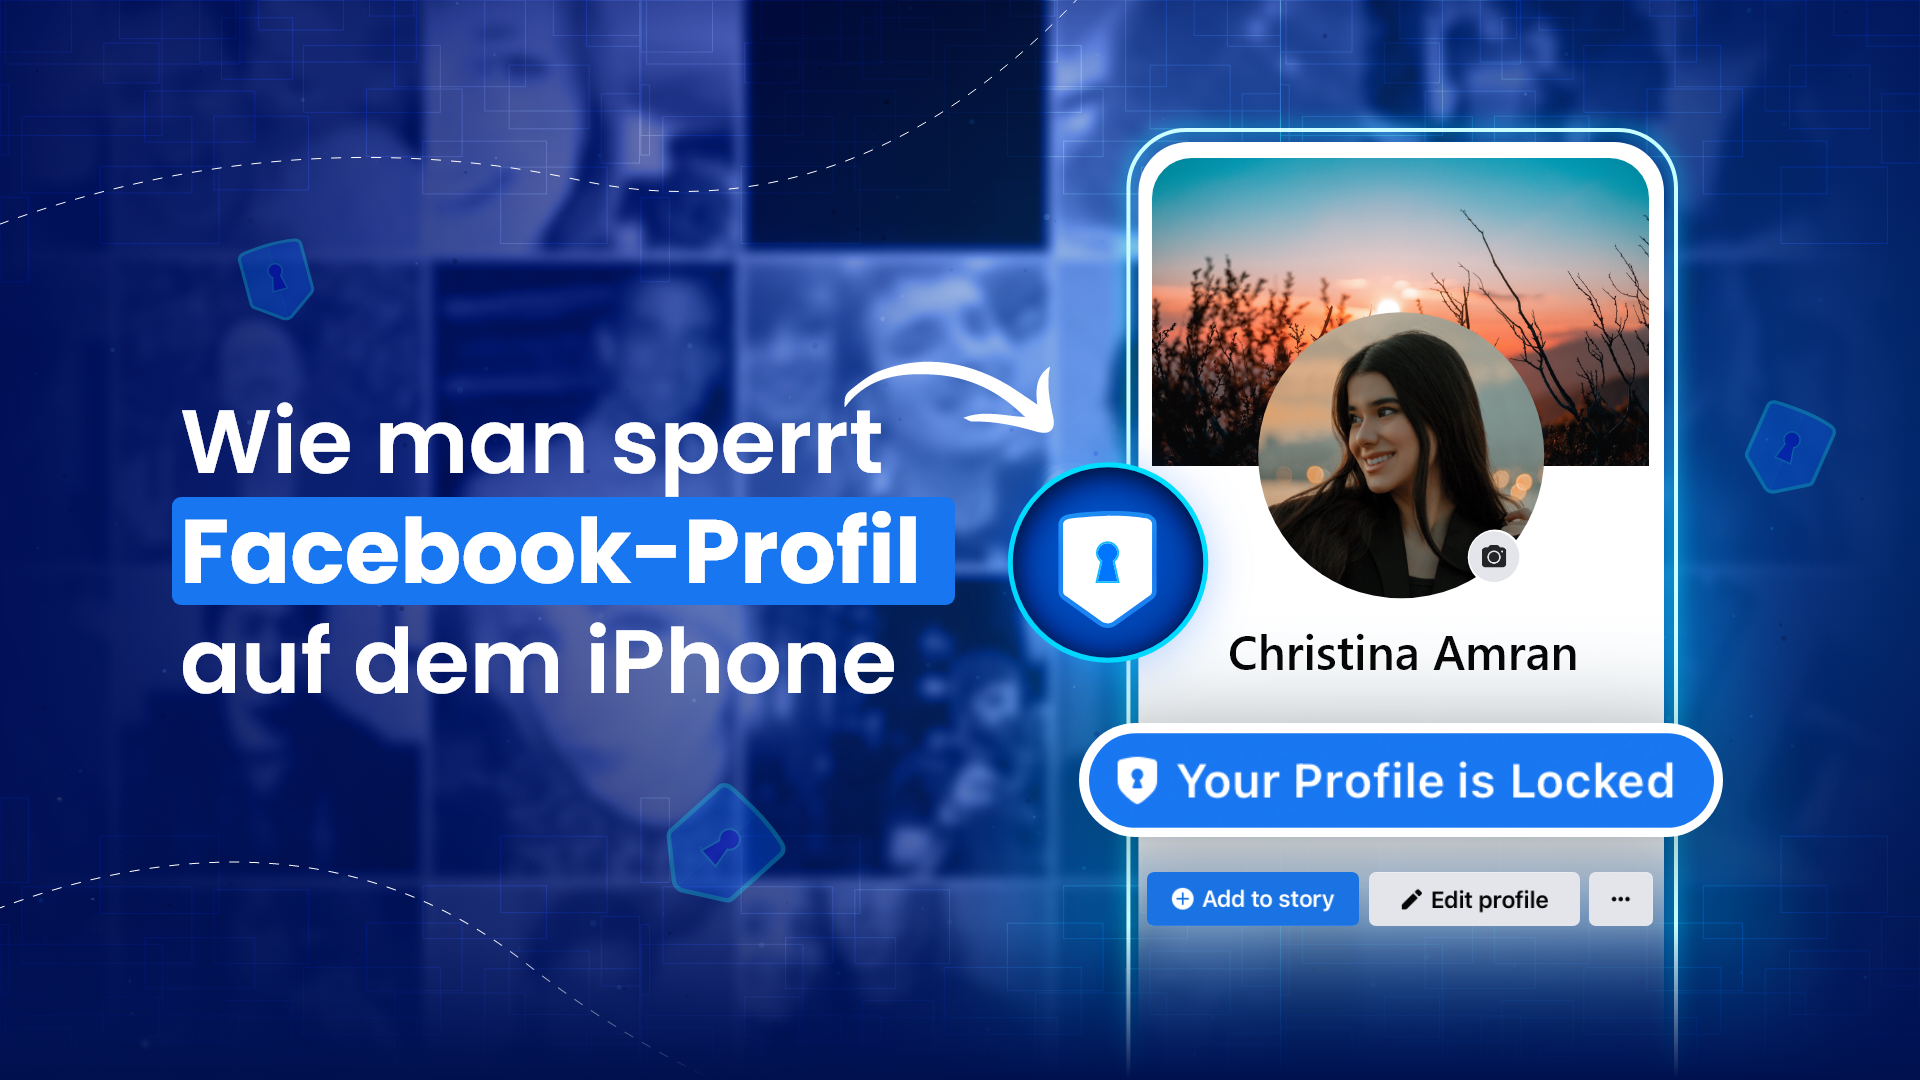 Wie sperre ich mein Facebook-Profil auf dem iPhone?